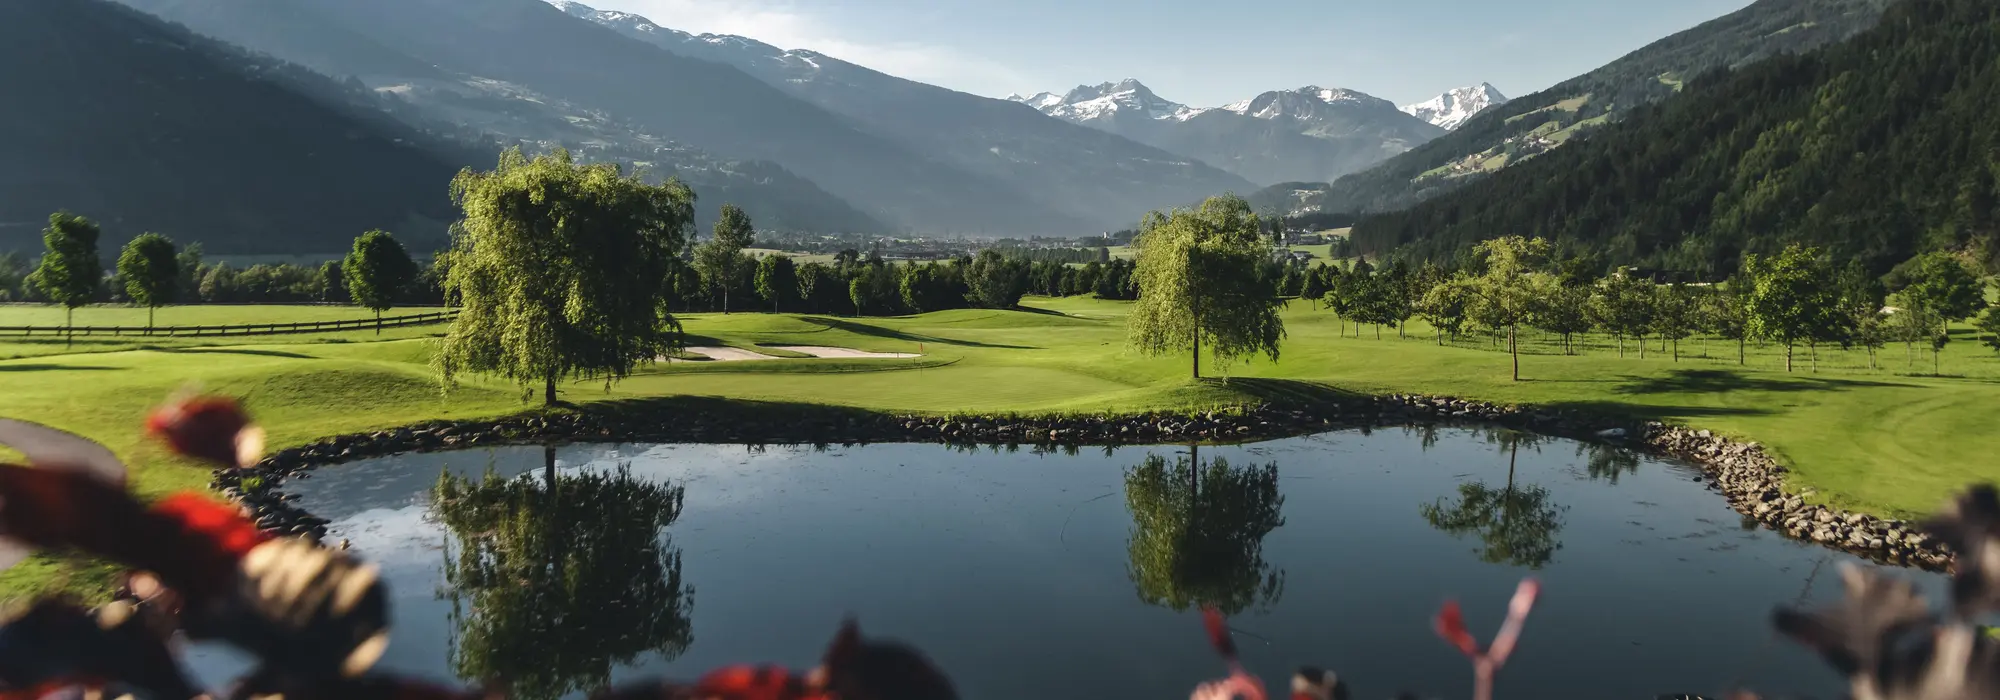 Golfpaltz in Uderns © Best of Zillertal